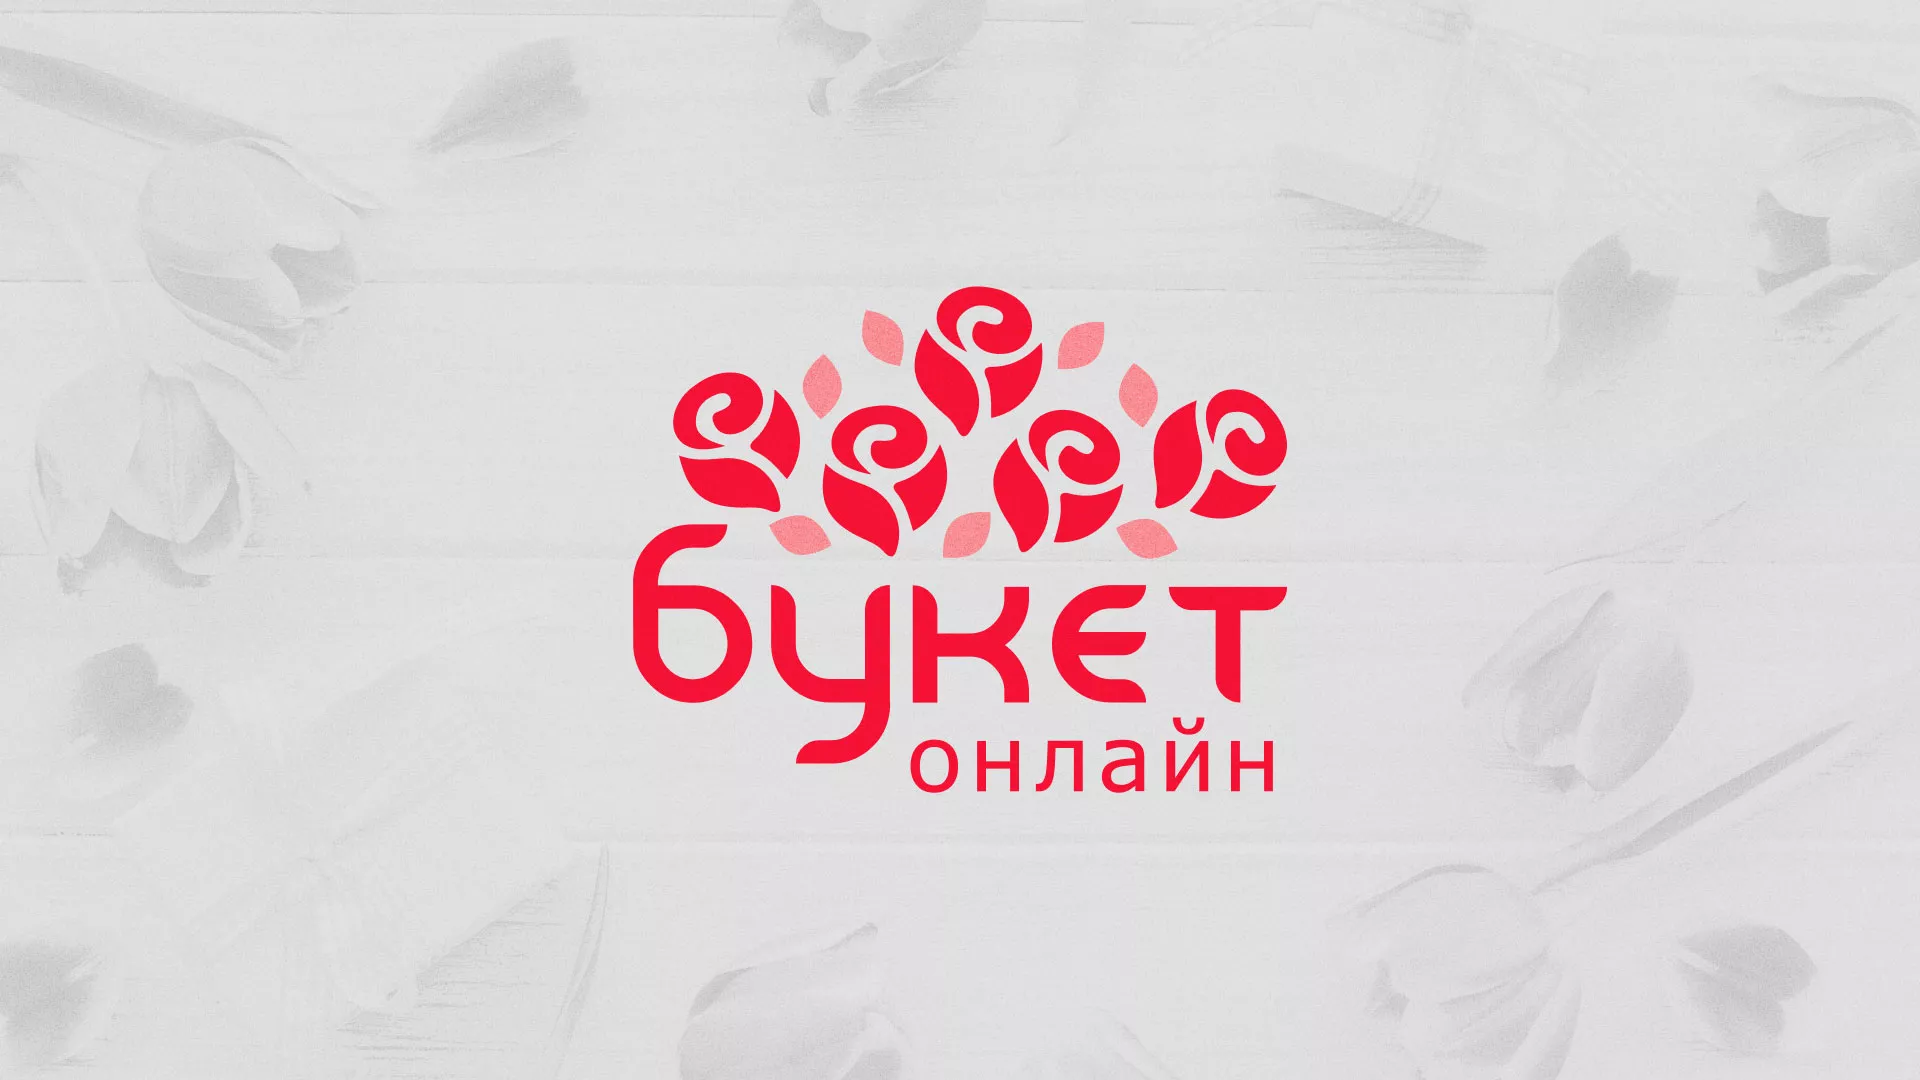 Создание интернет-магазина «Букет-онлайн» по цветам в Верхоянске